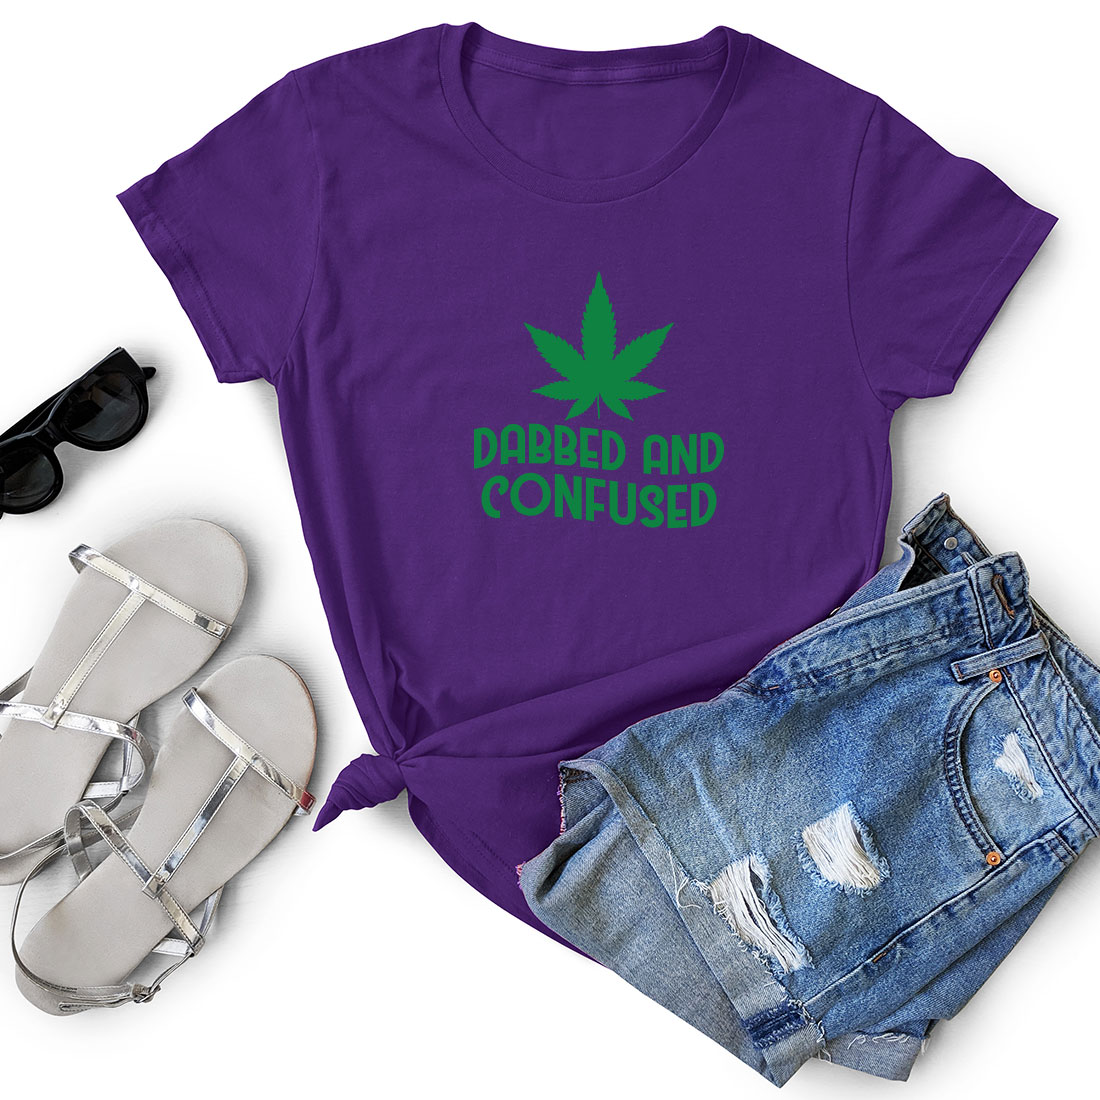 Purple shirt with a marijuana leaf on it.